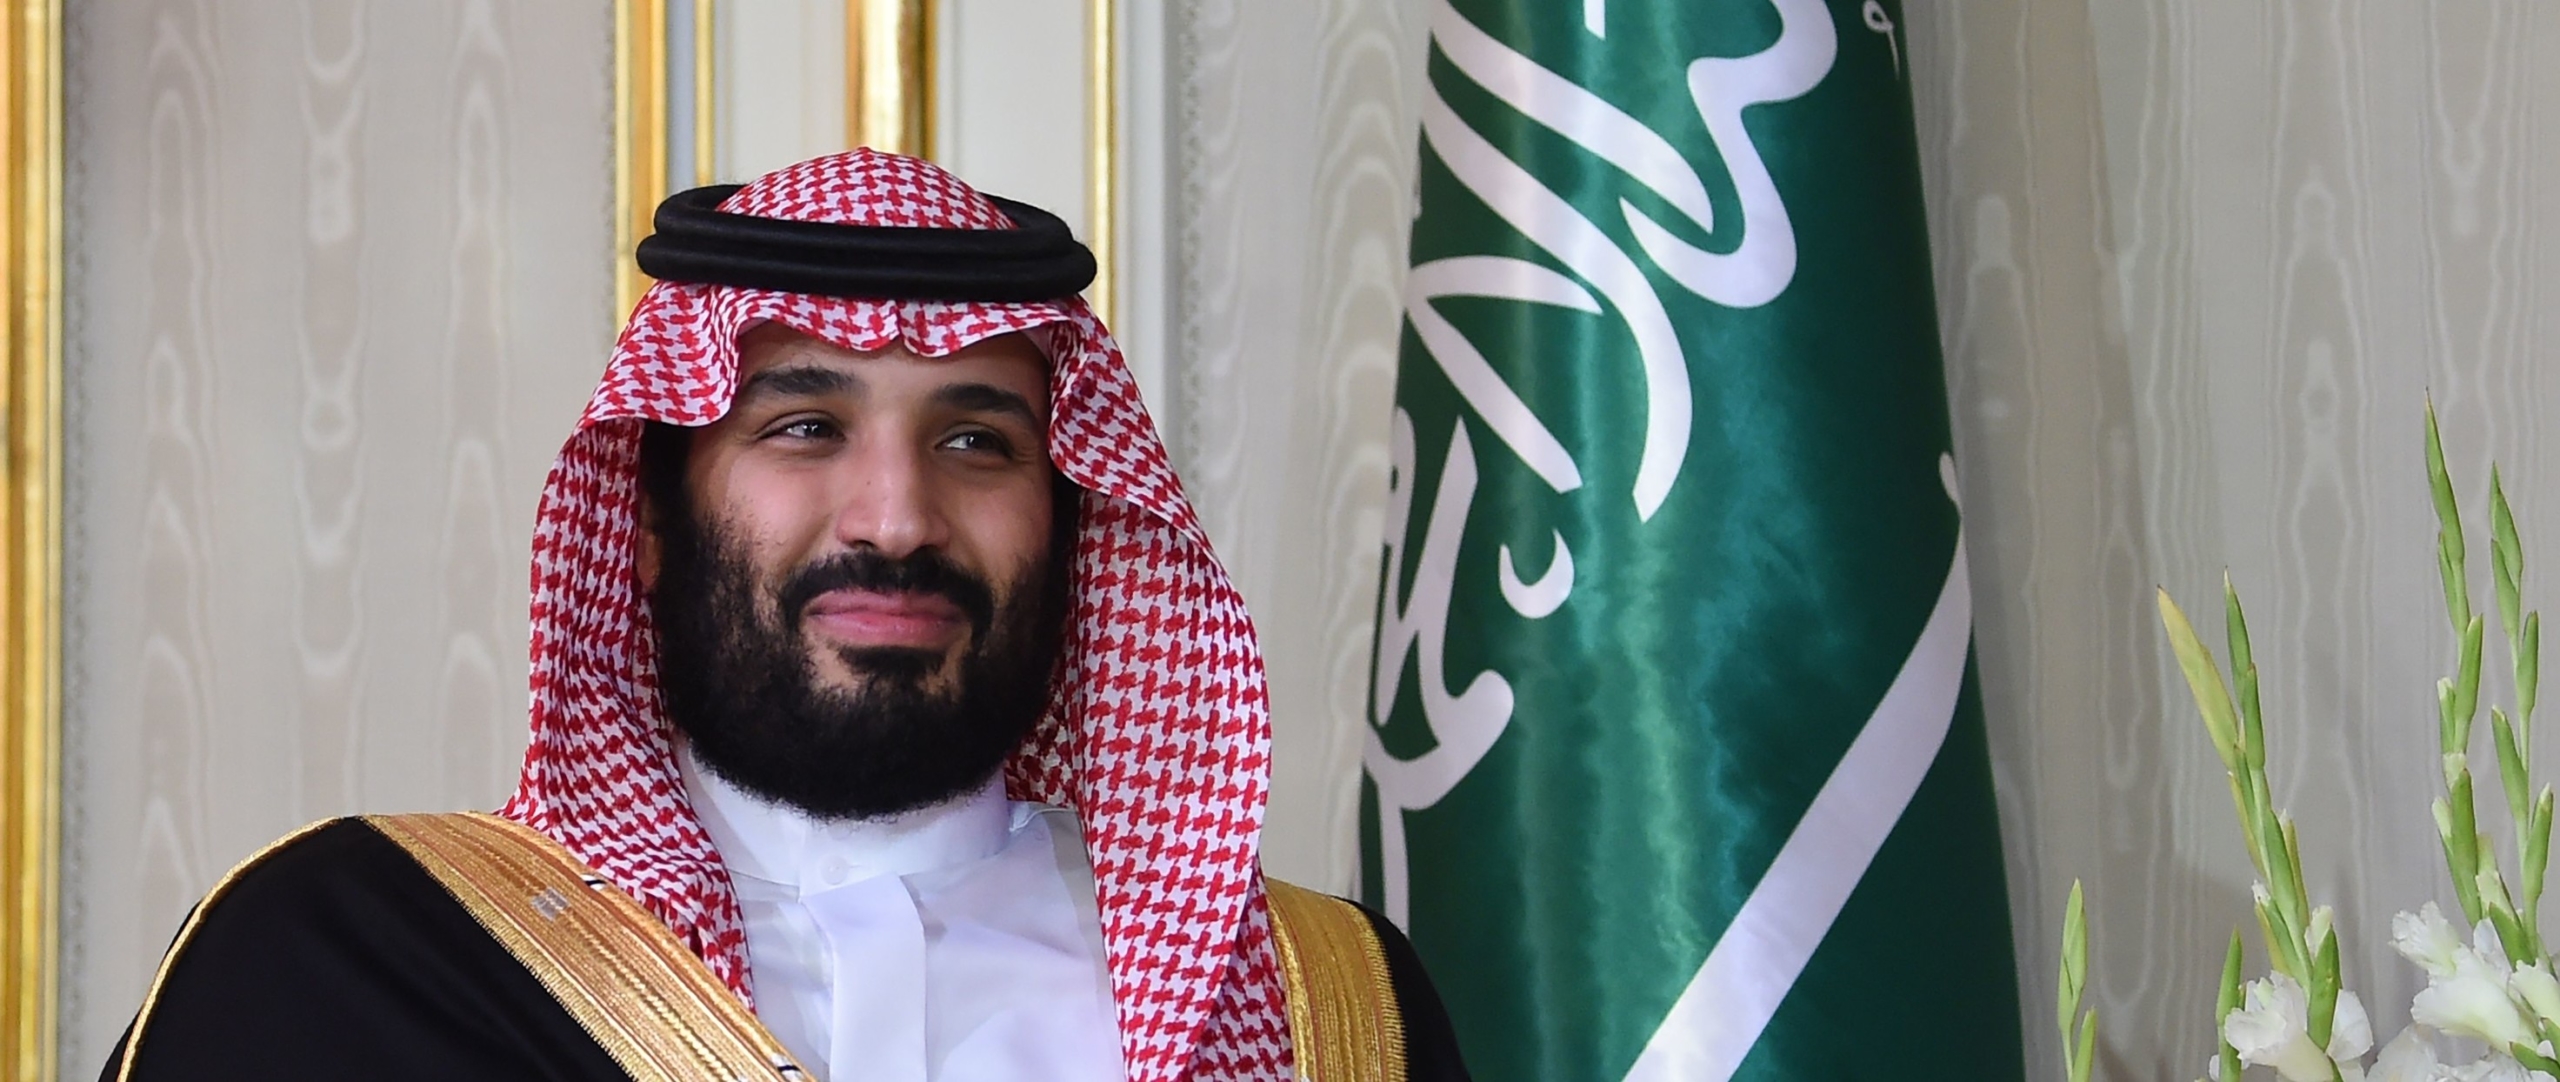 المملكة العربية السعودية: الرقابة على نتفليكس أحدث دليل على قمع حرية التعبير